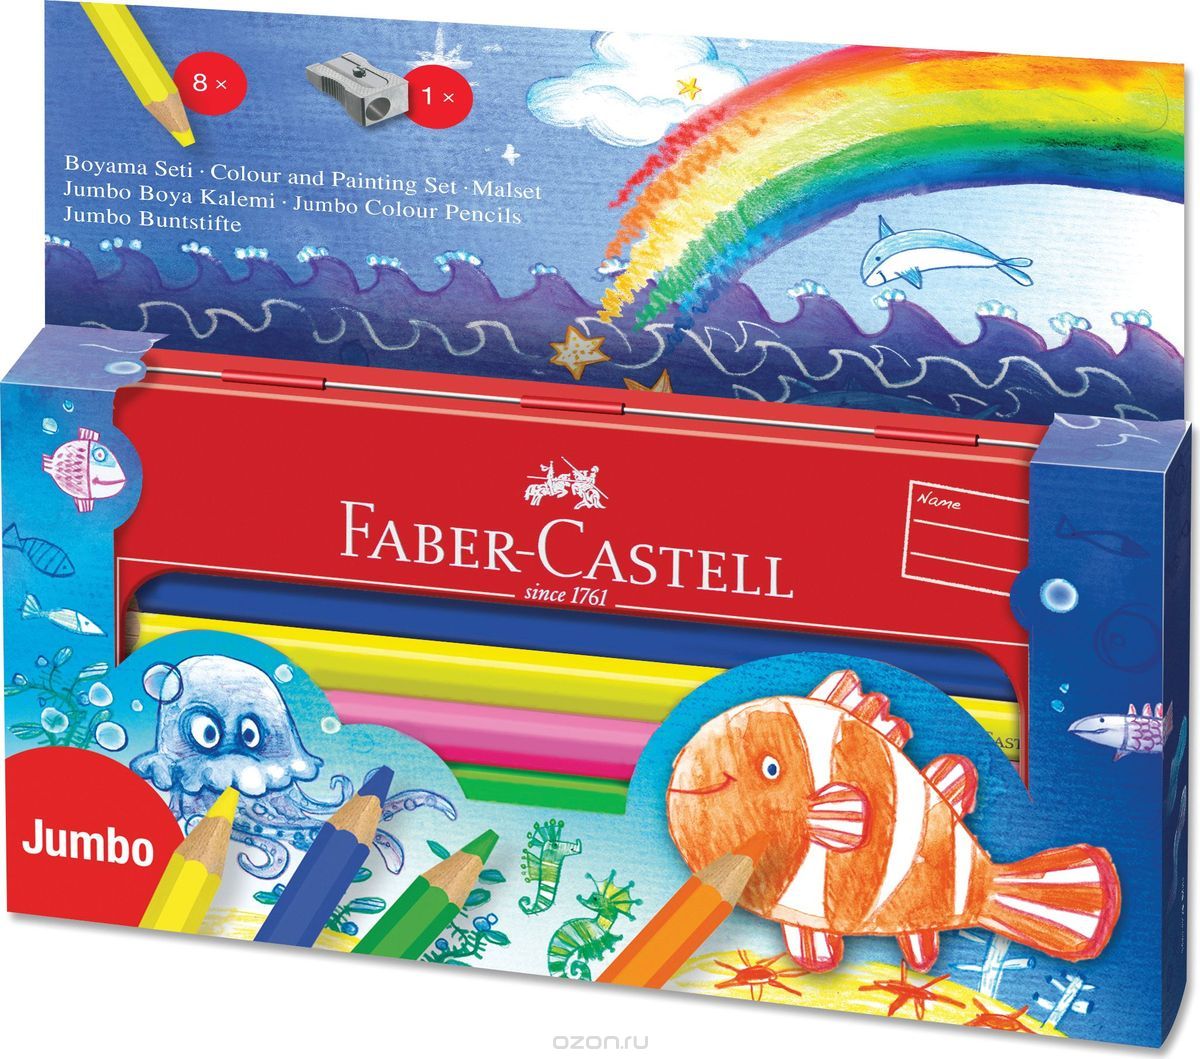 Faber-Castell    Jumbo       9 